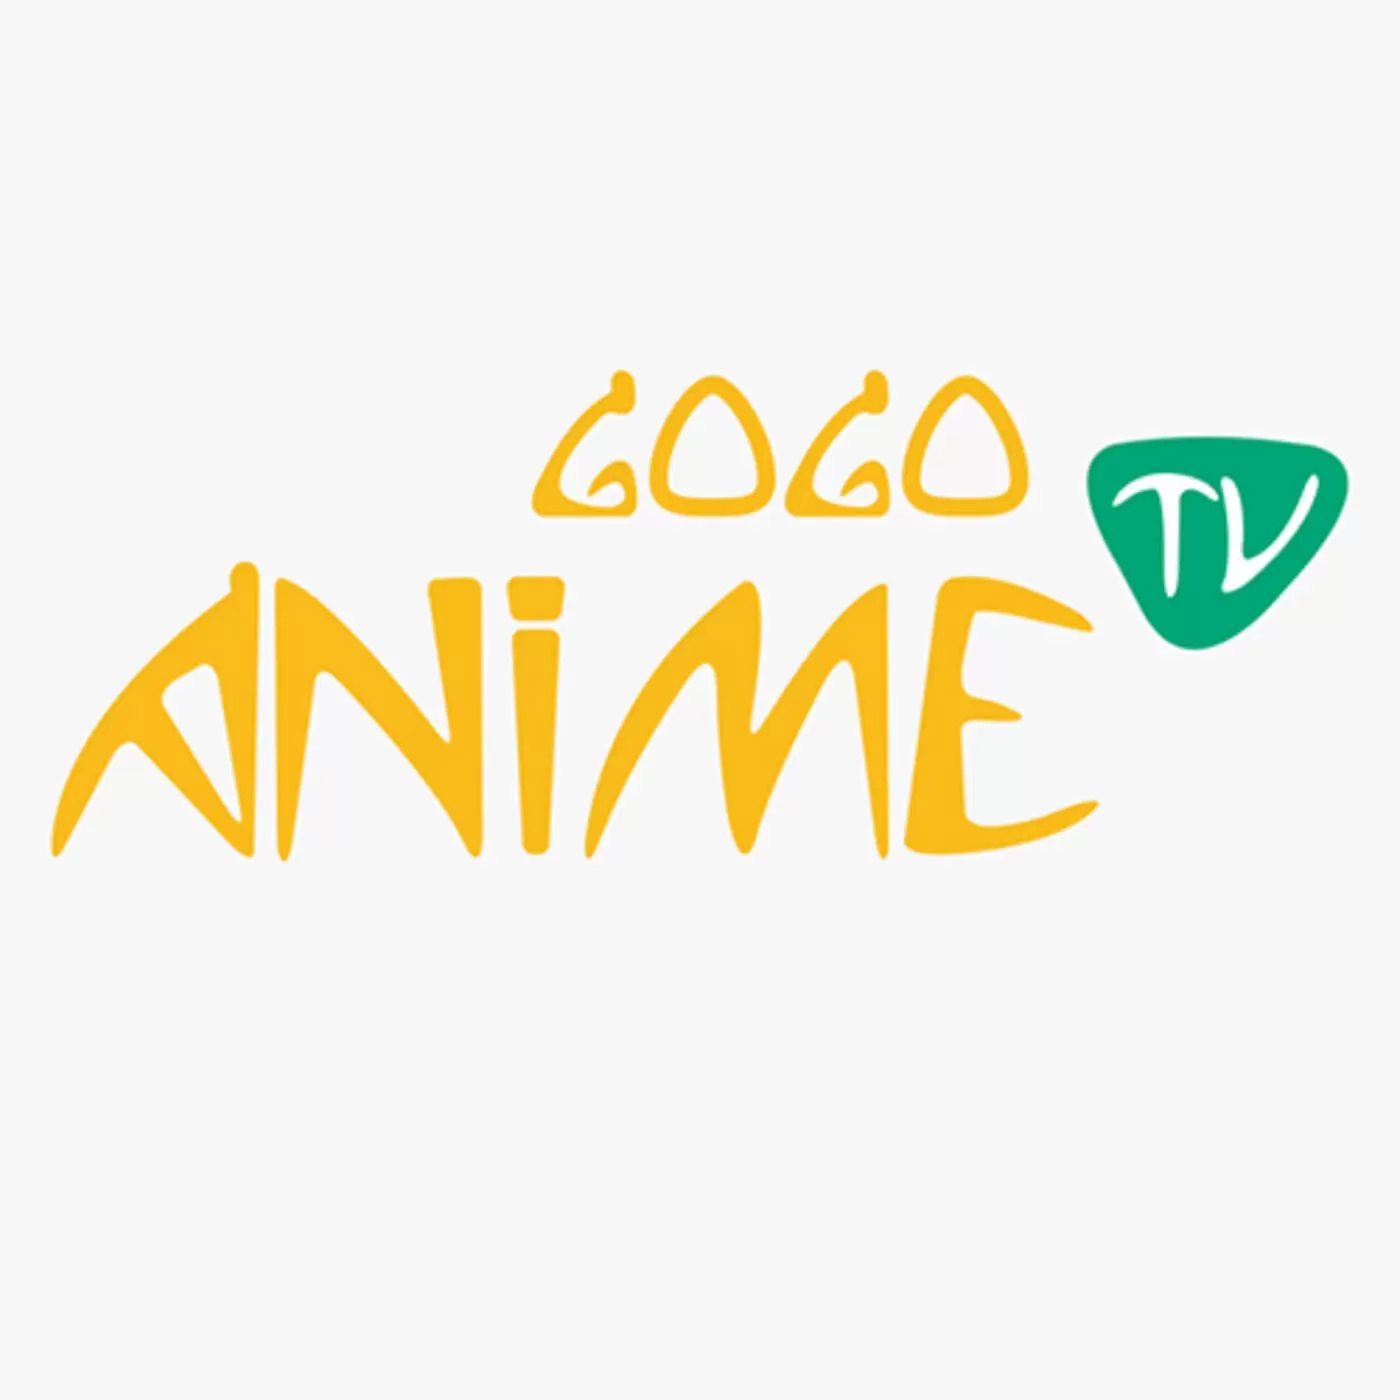 How to install GoGo Anime Kodi